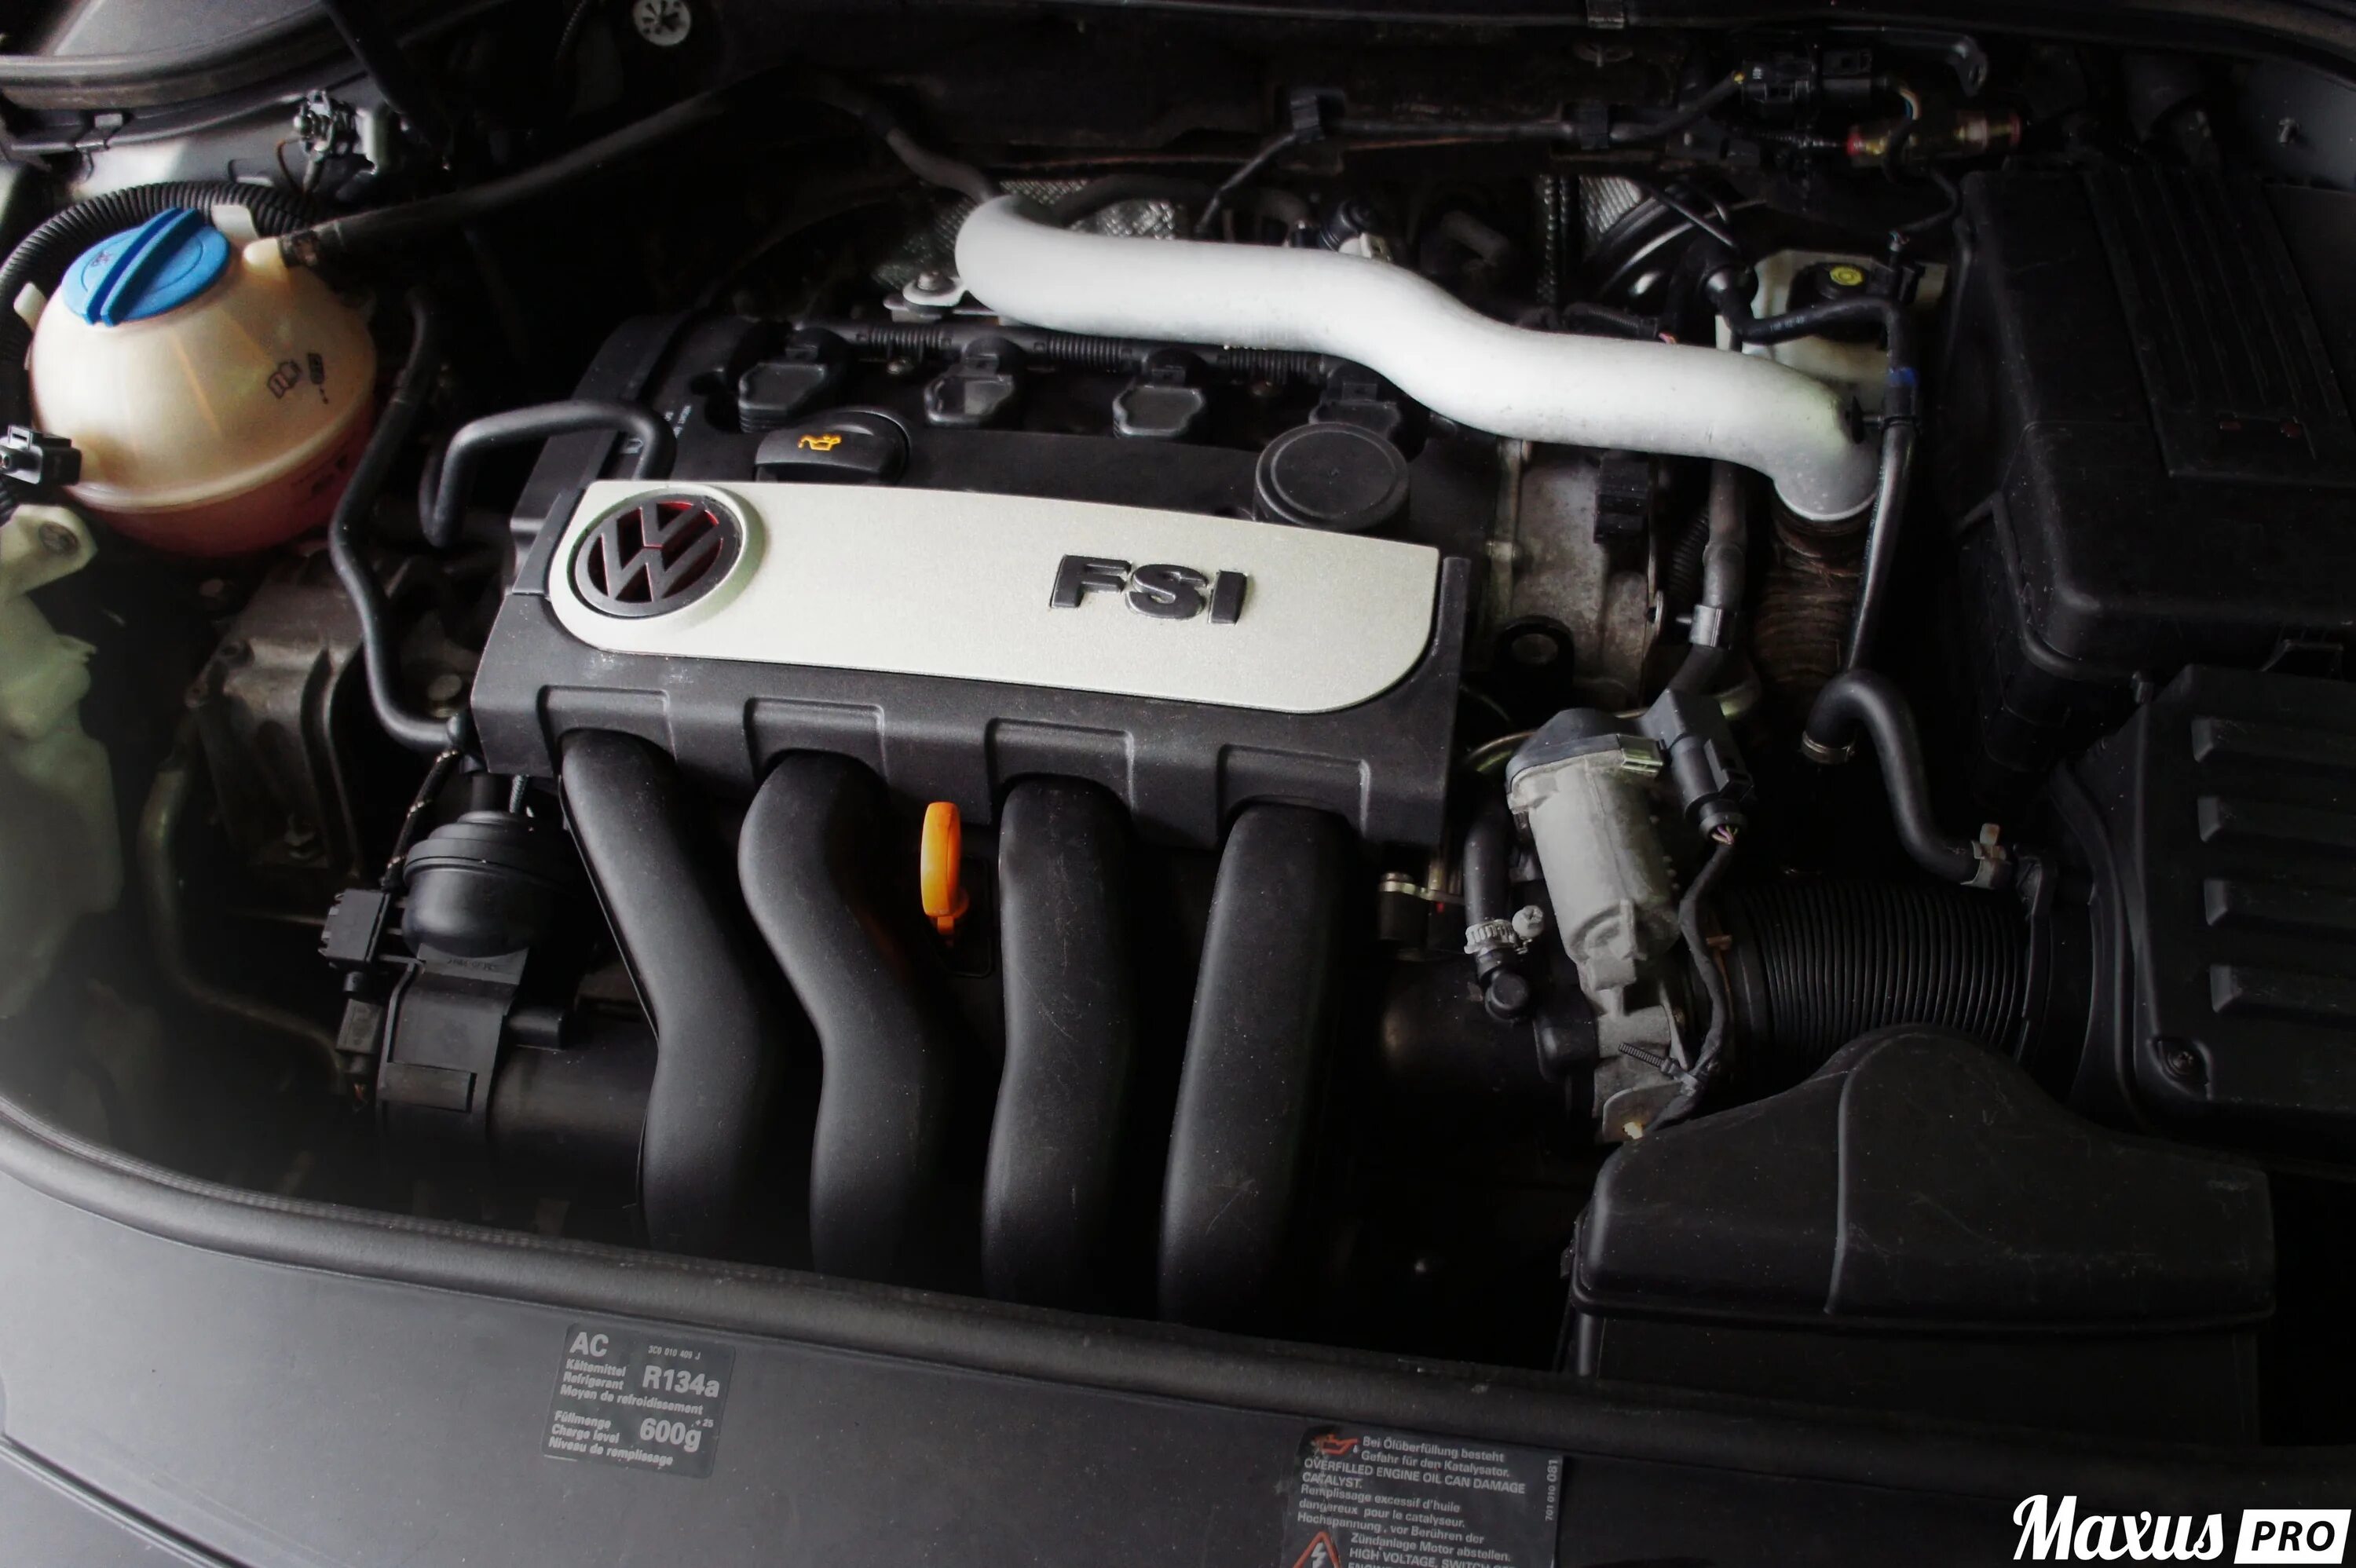 Двигатель Фольксваген Пассат б6 2.0 FSI. Двигатель VW Passat b6 2.0FSI. Пассат б6 2.0 FSI 150 Л.С. Мотор FSI Passat b6.